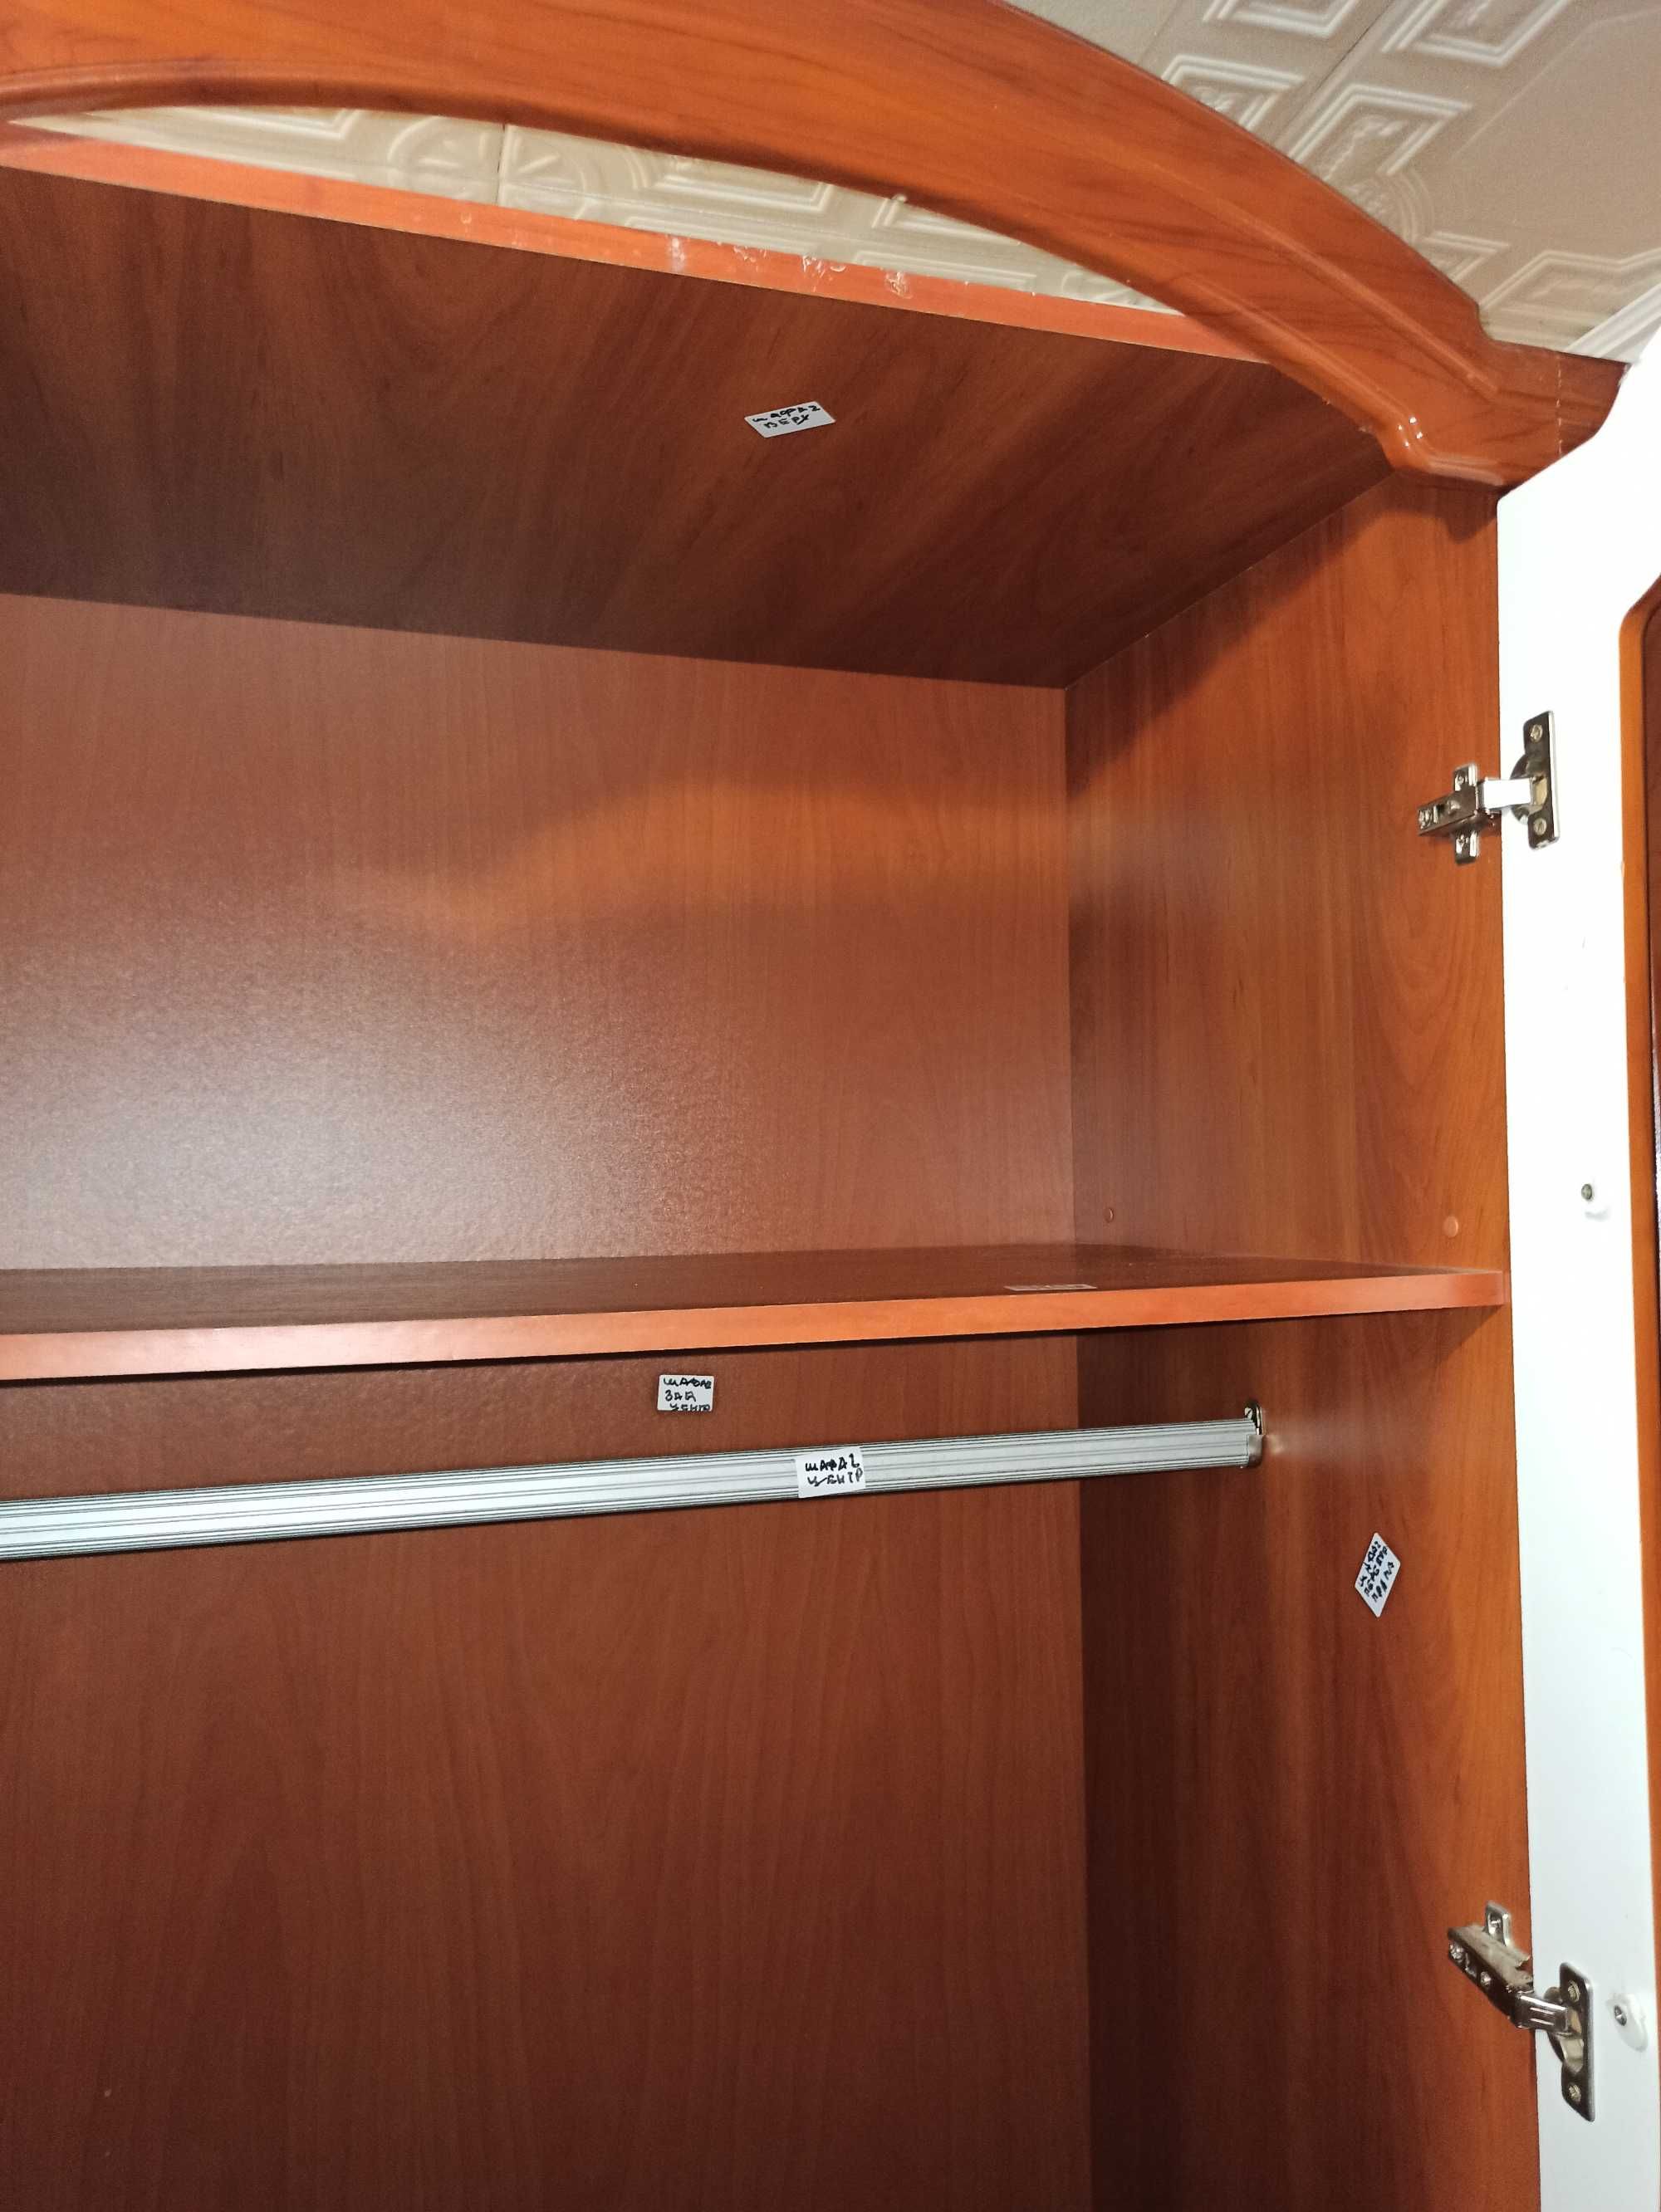 Шкаф стенка функциональный практичный и удобный В2185хШ1765хГ520